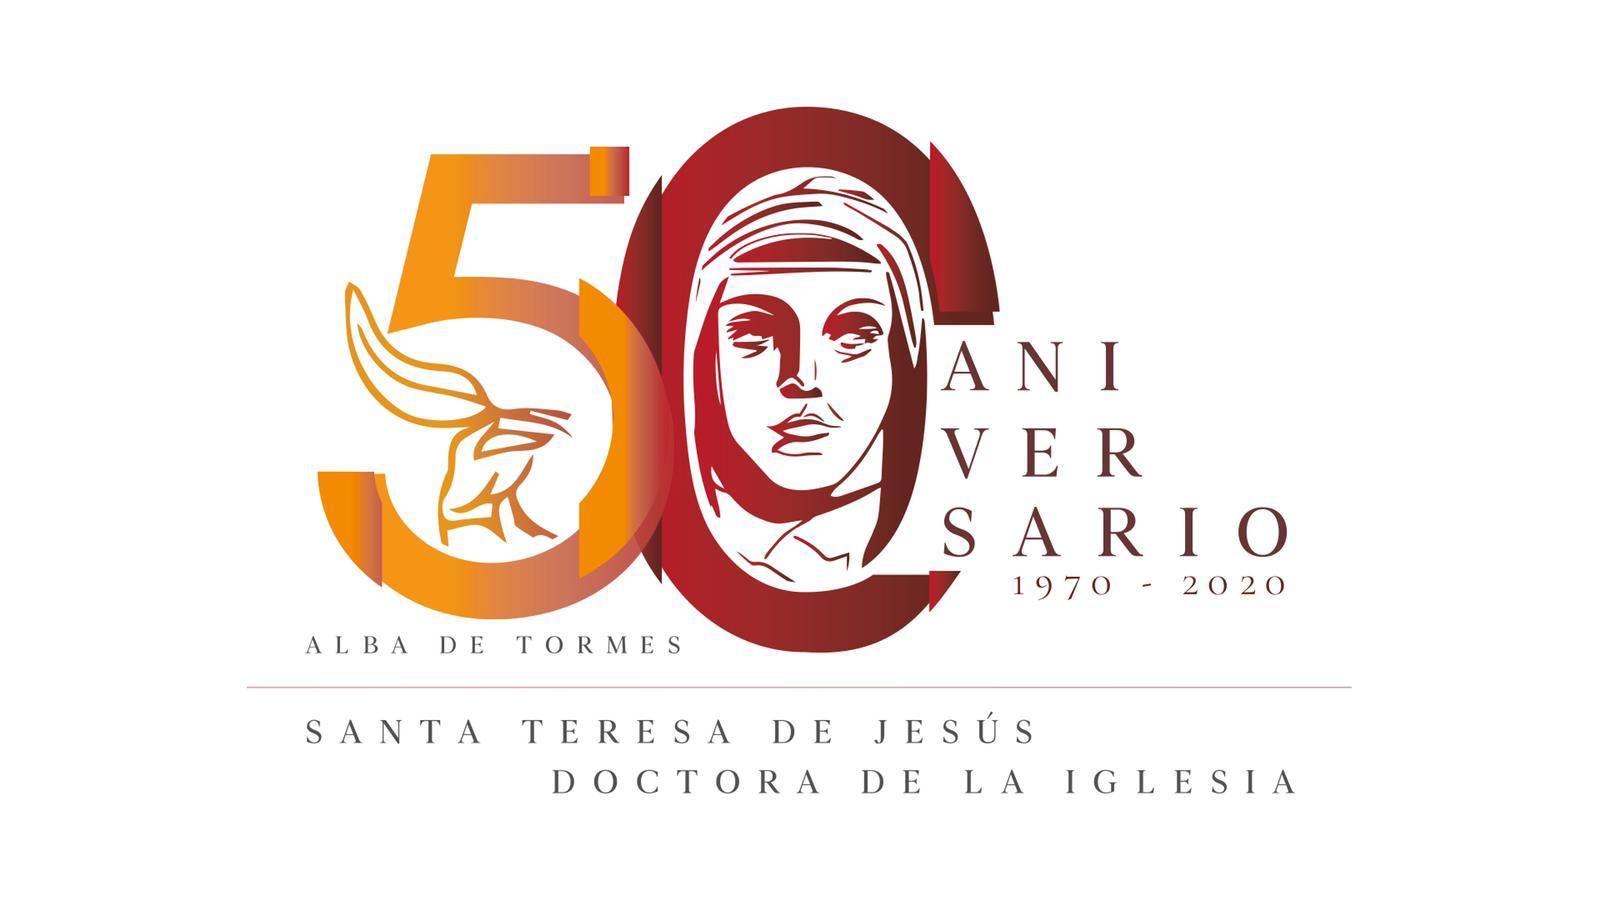 Santa Teresa, Doctora de la Iglesia